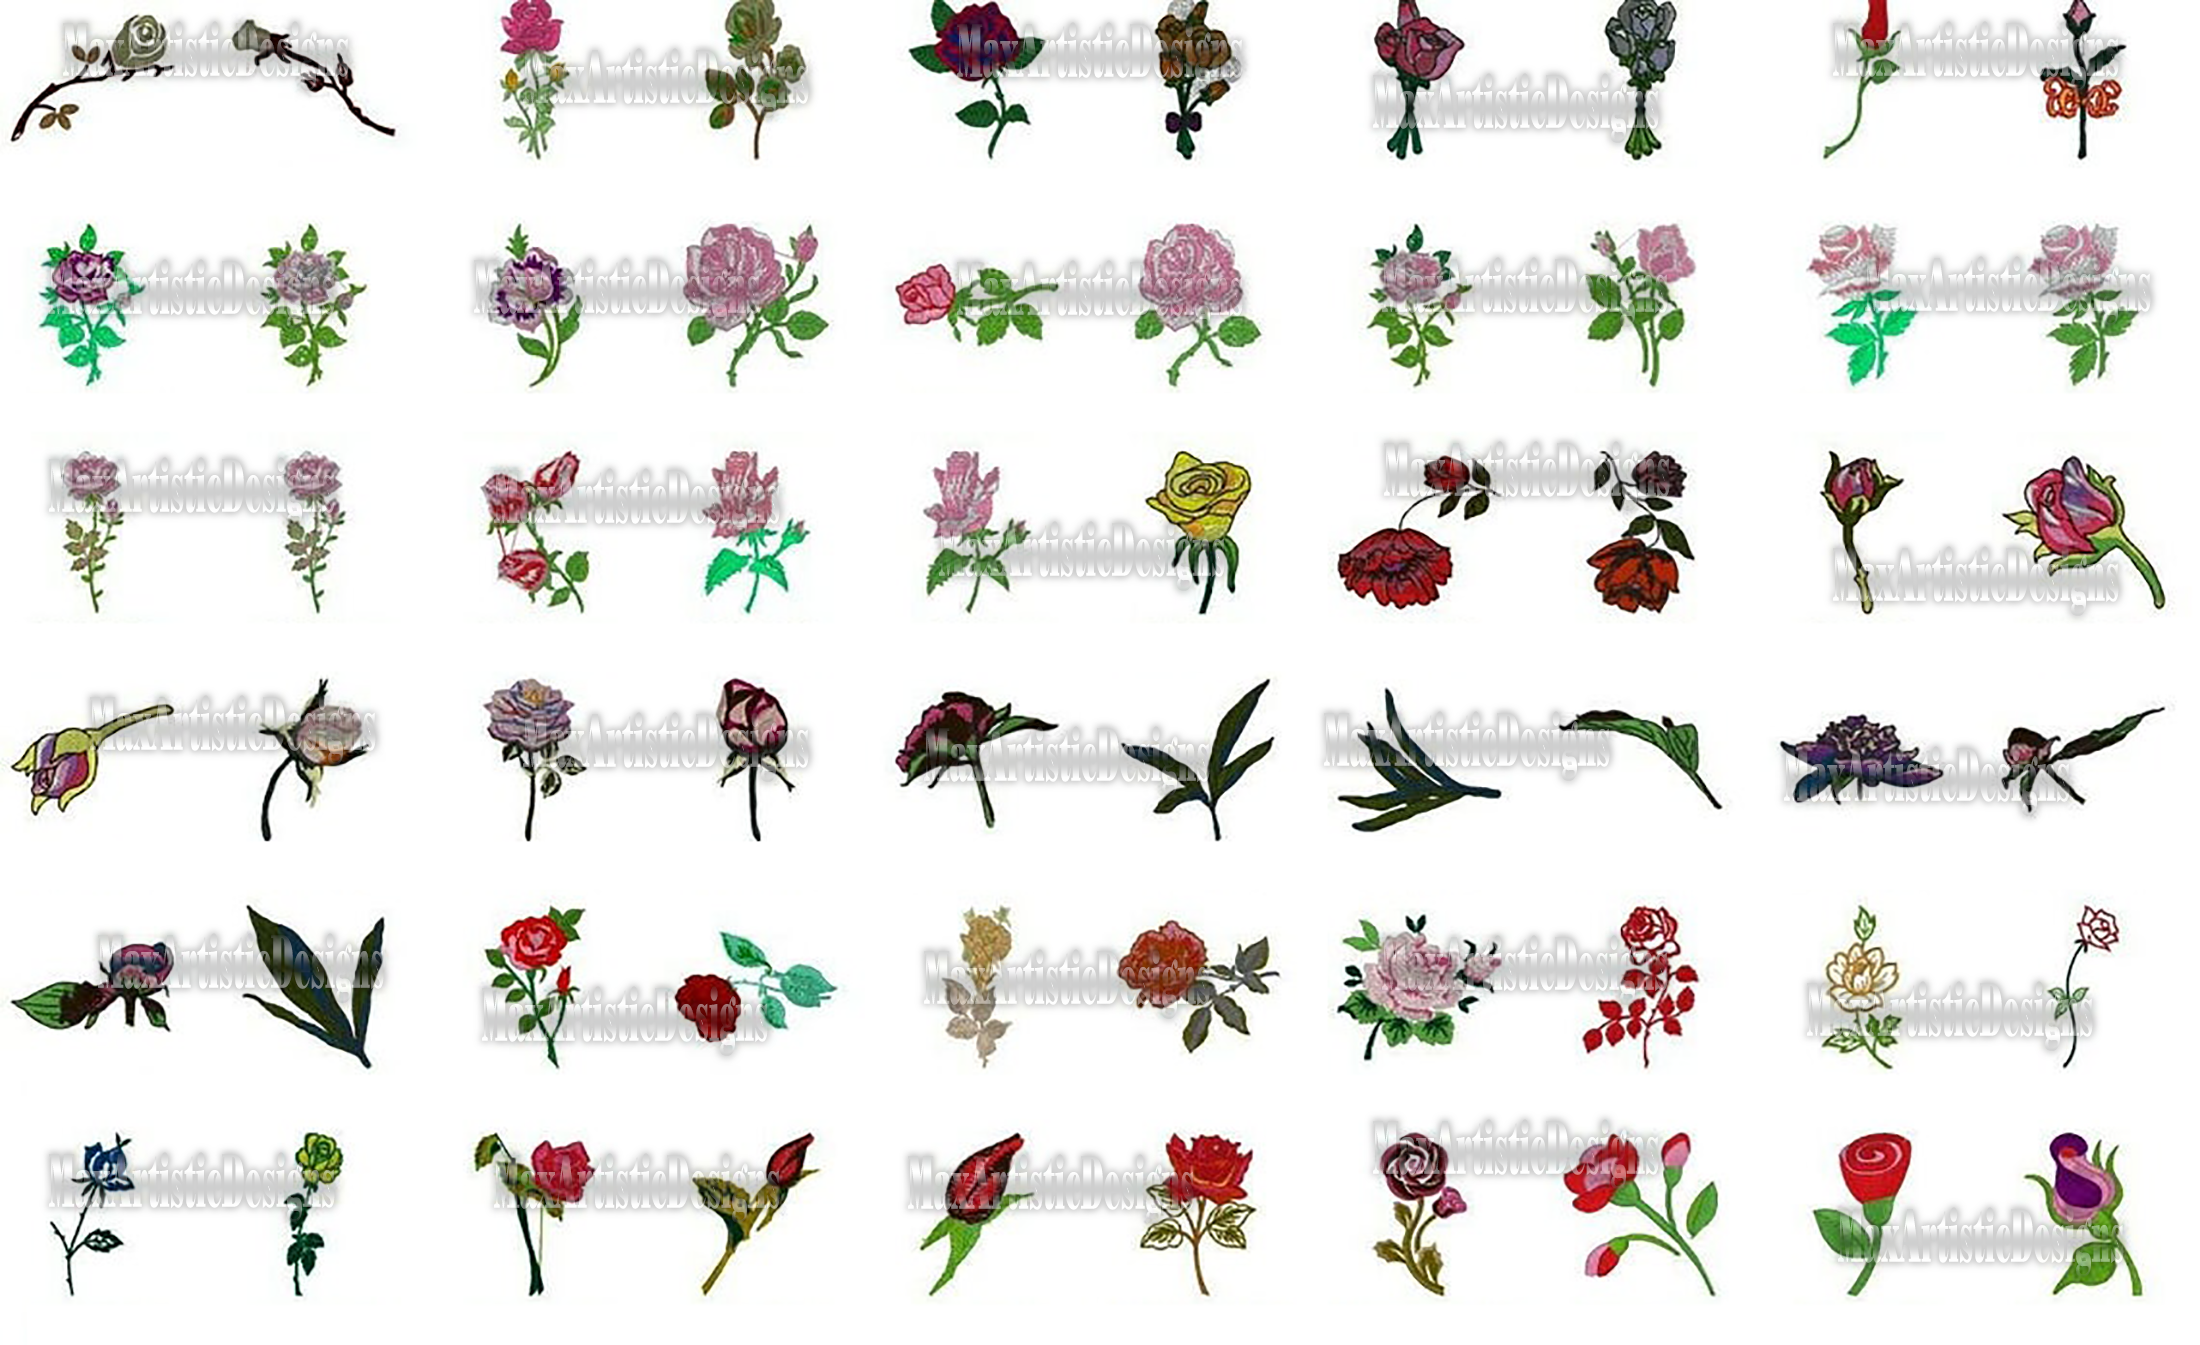 Raccolta di oltre 1800 file di macchine da ricamo di rose in formato pes